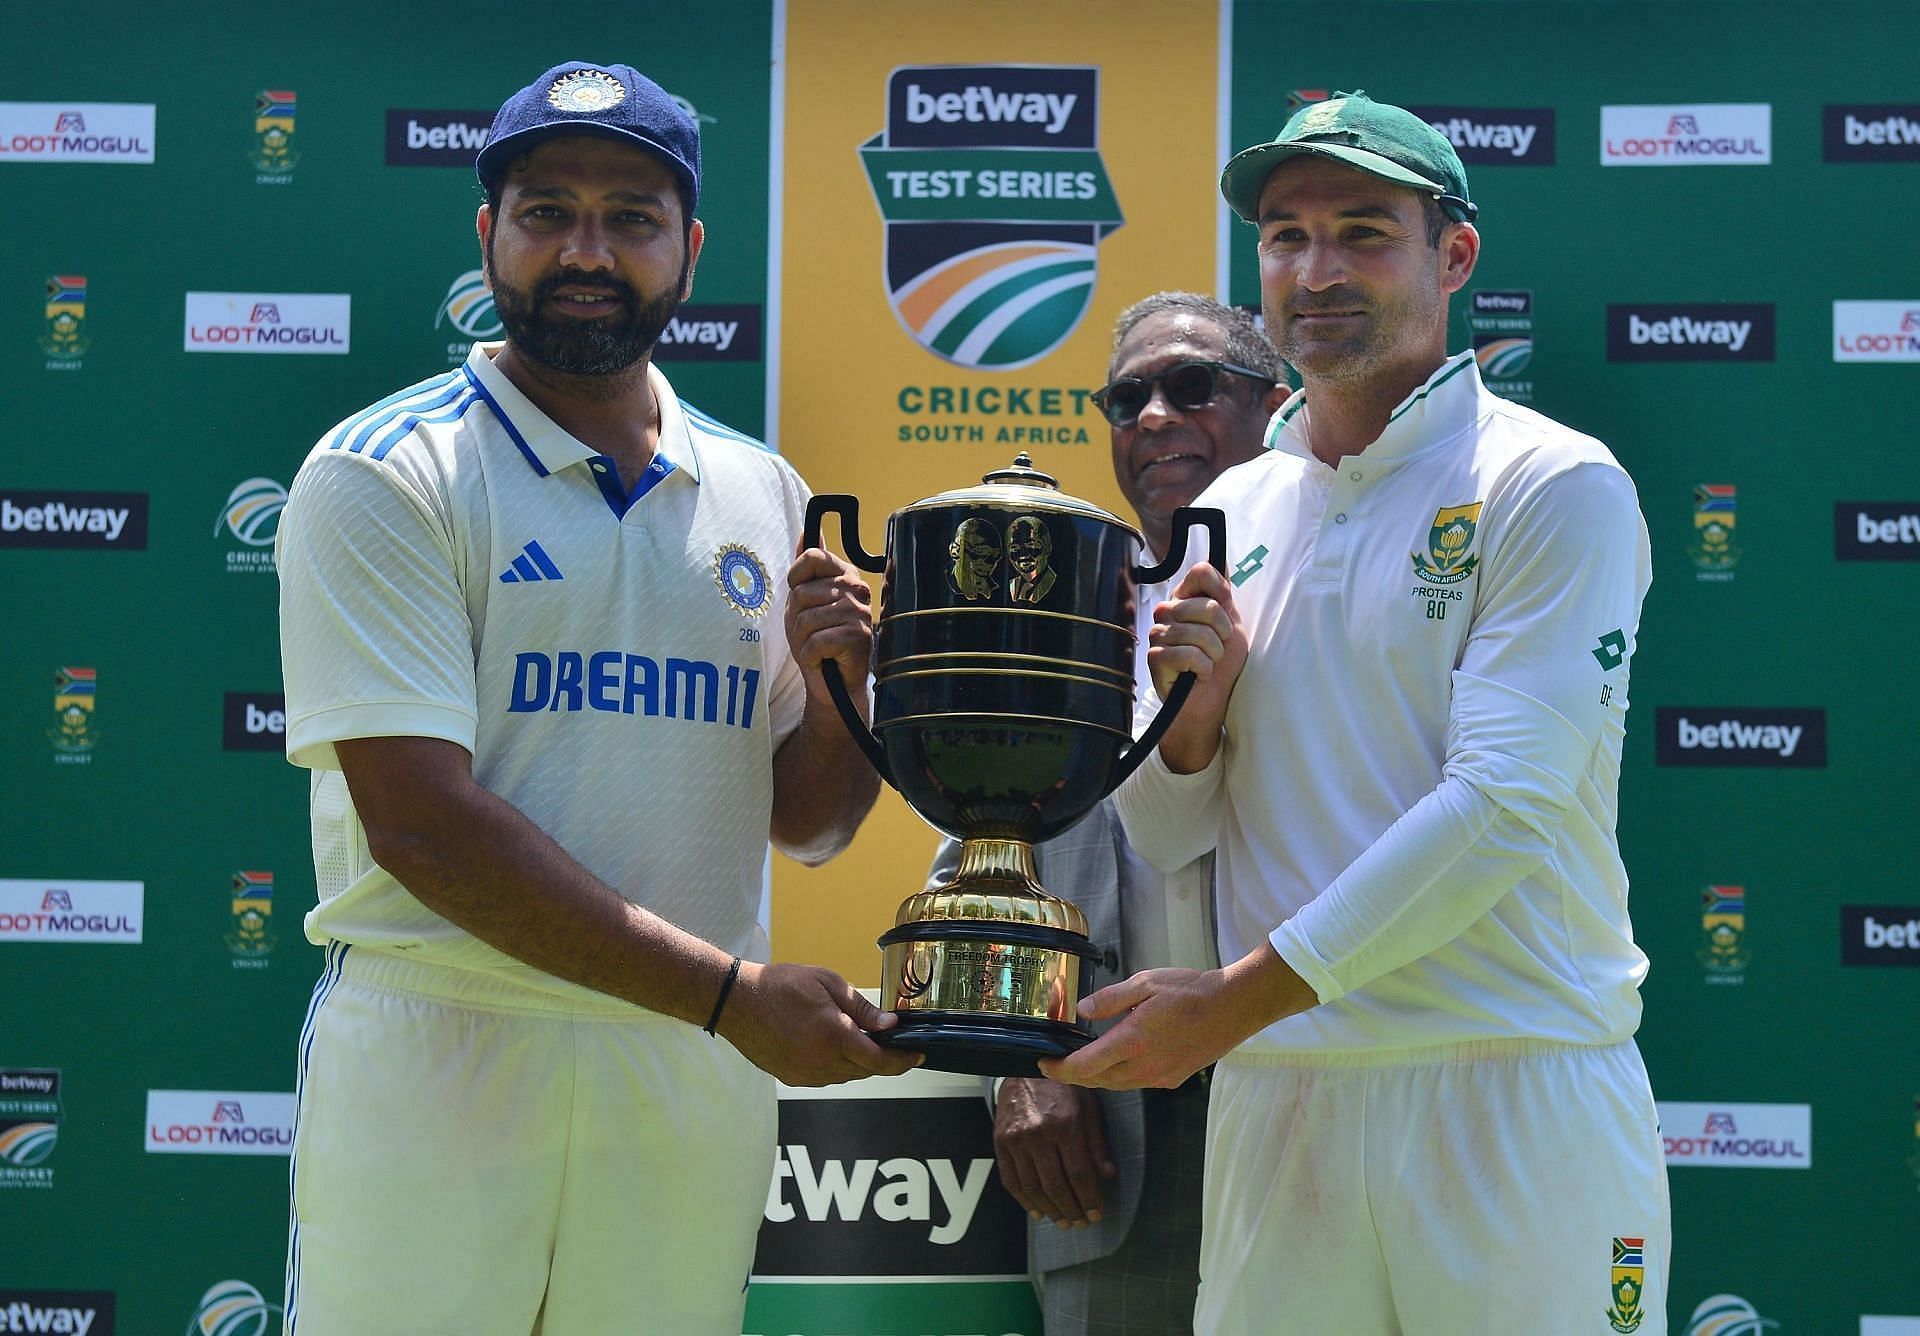 भारत और साउथ अफ्रीका के बीच टेस्ट सीरीज 1-1 से बराबर रही थी